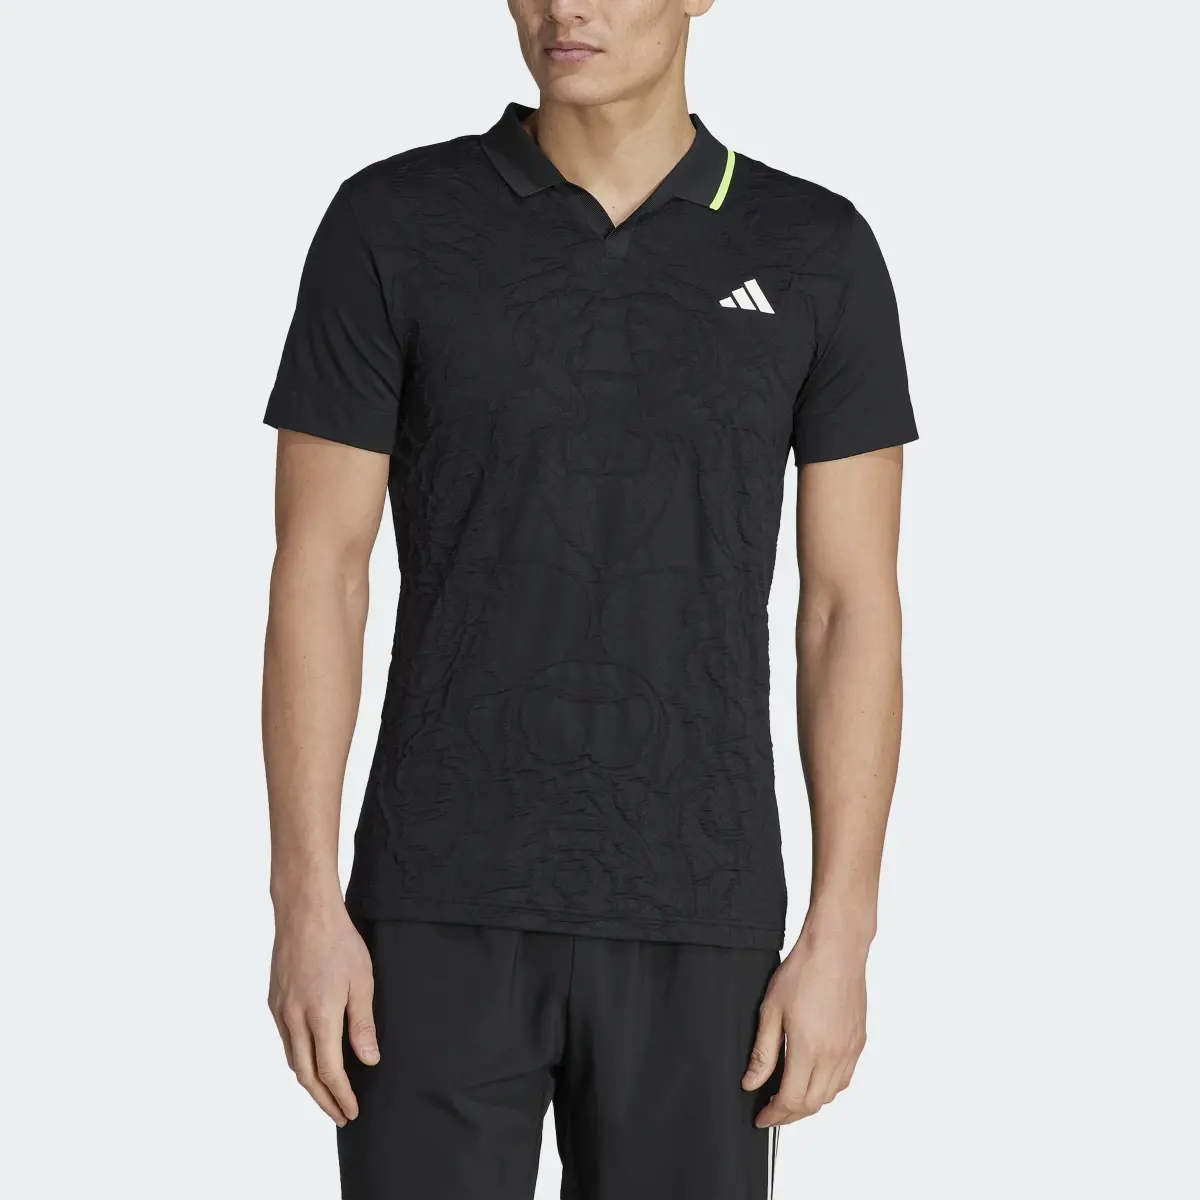 Adidas AEROREADY FreeLift Pro Tennis Polo Shirt. 1